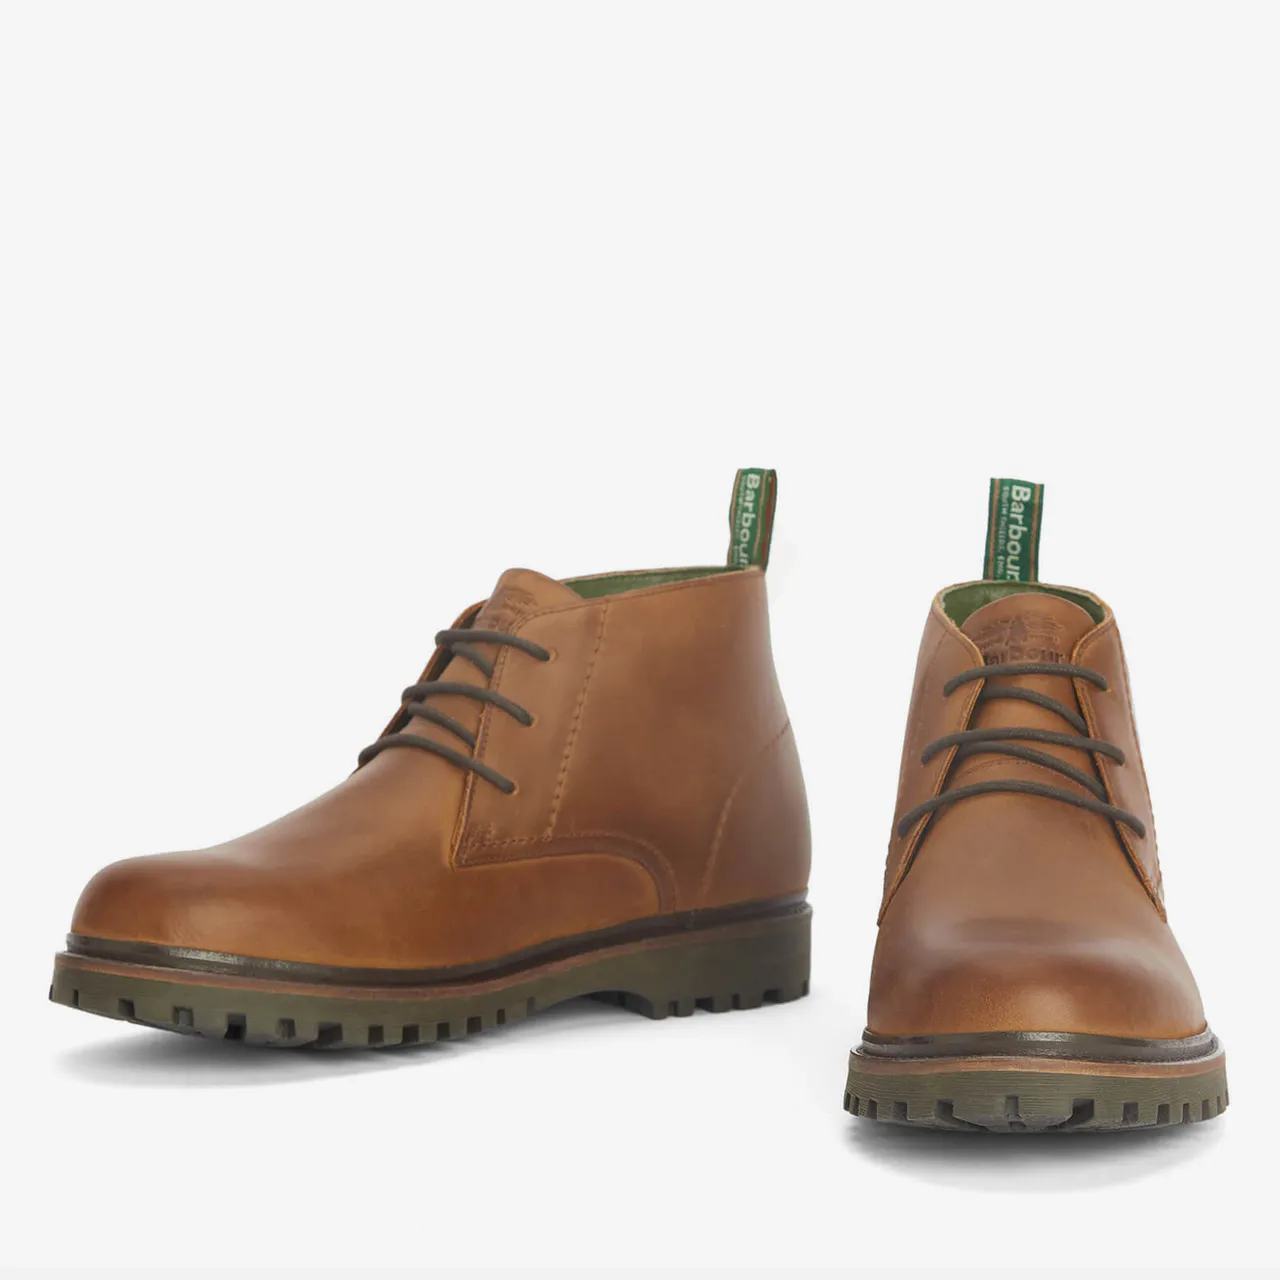 Barbour Men's Cairngorm Waterproof Leather Chukka Boots - UK